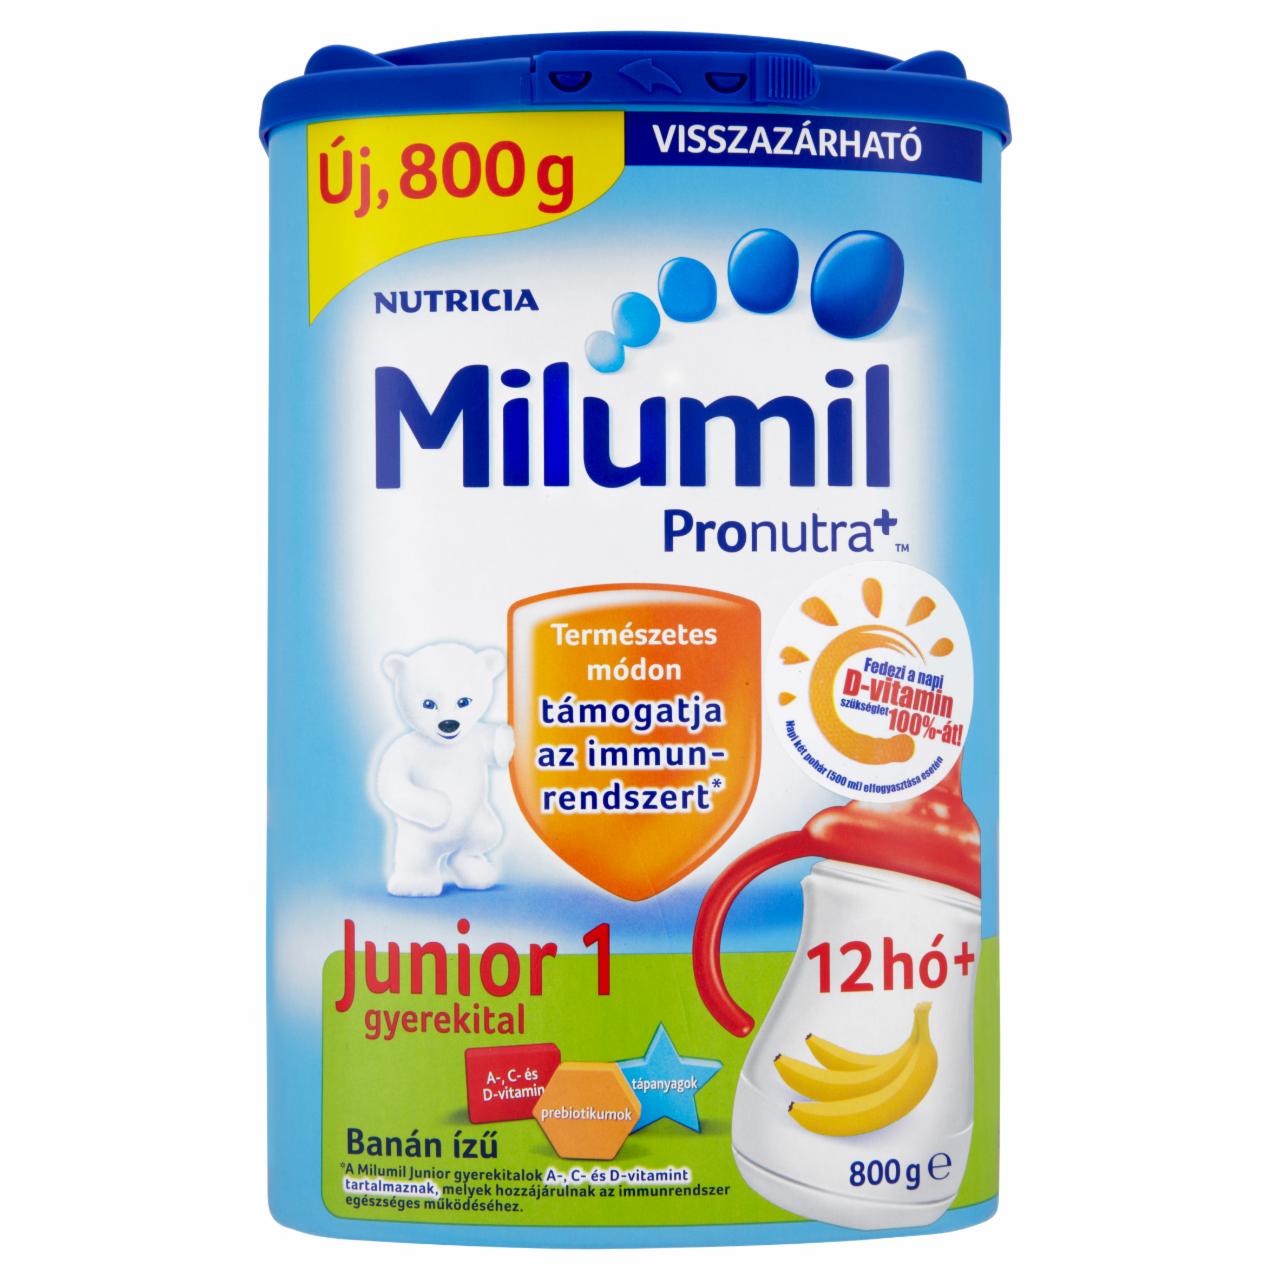 Képek - Milumil Junior 1 gyerekital banán ízű 12 hó+ 800 g